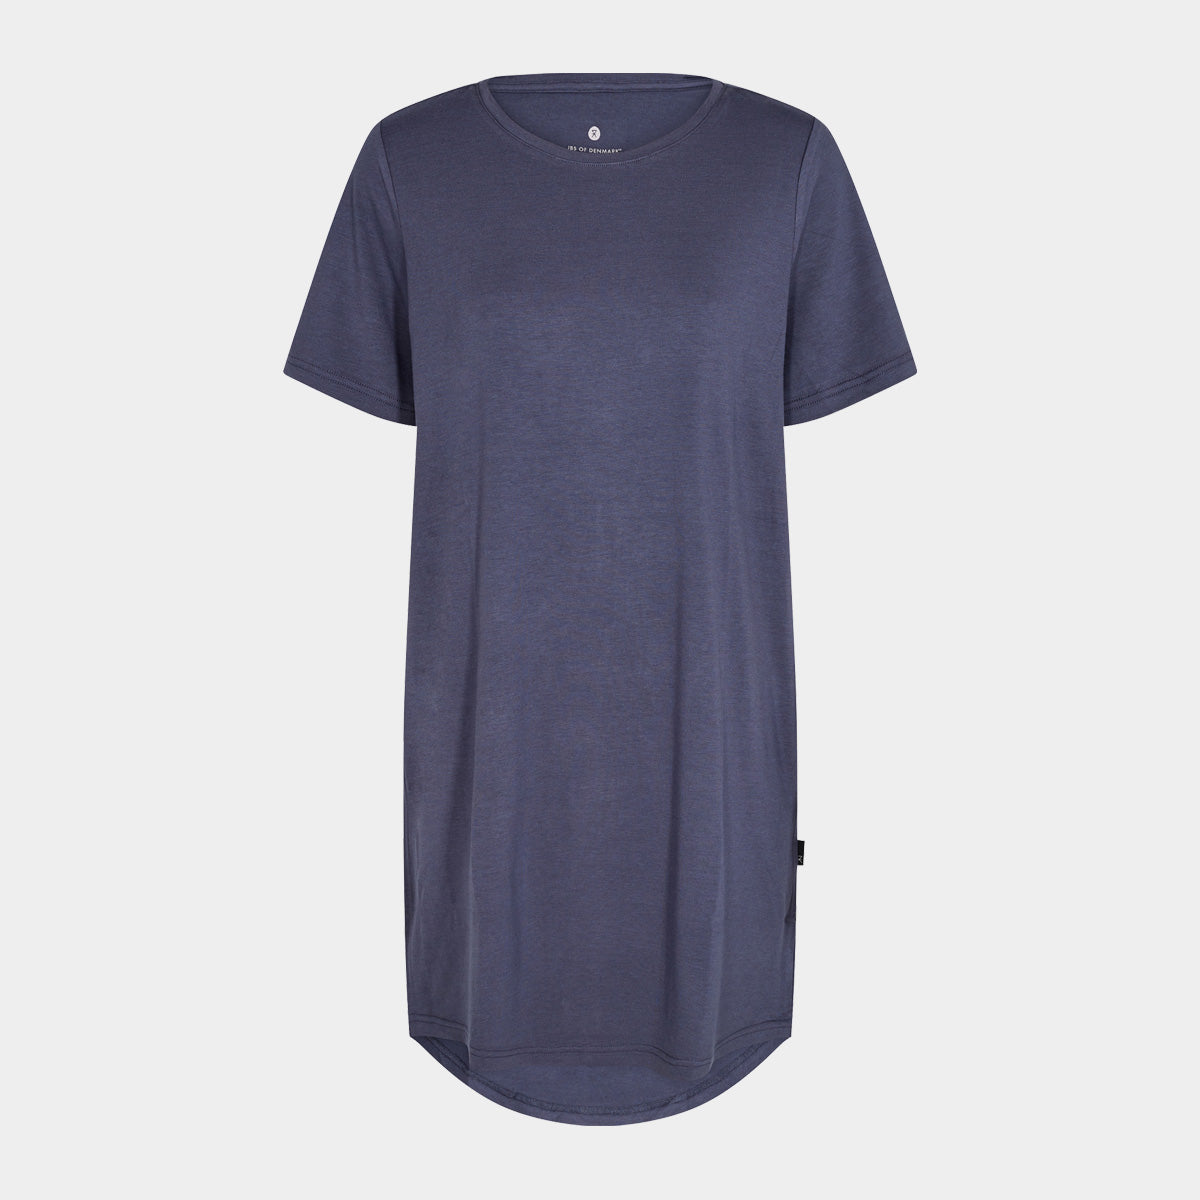 Se Støvet blå bambus T-shirt kjole til dame fra JBS of Denmark, XS hos Bambustøj.dk